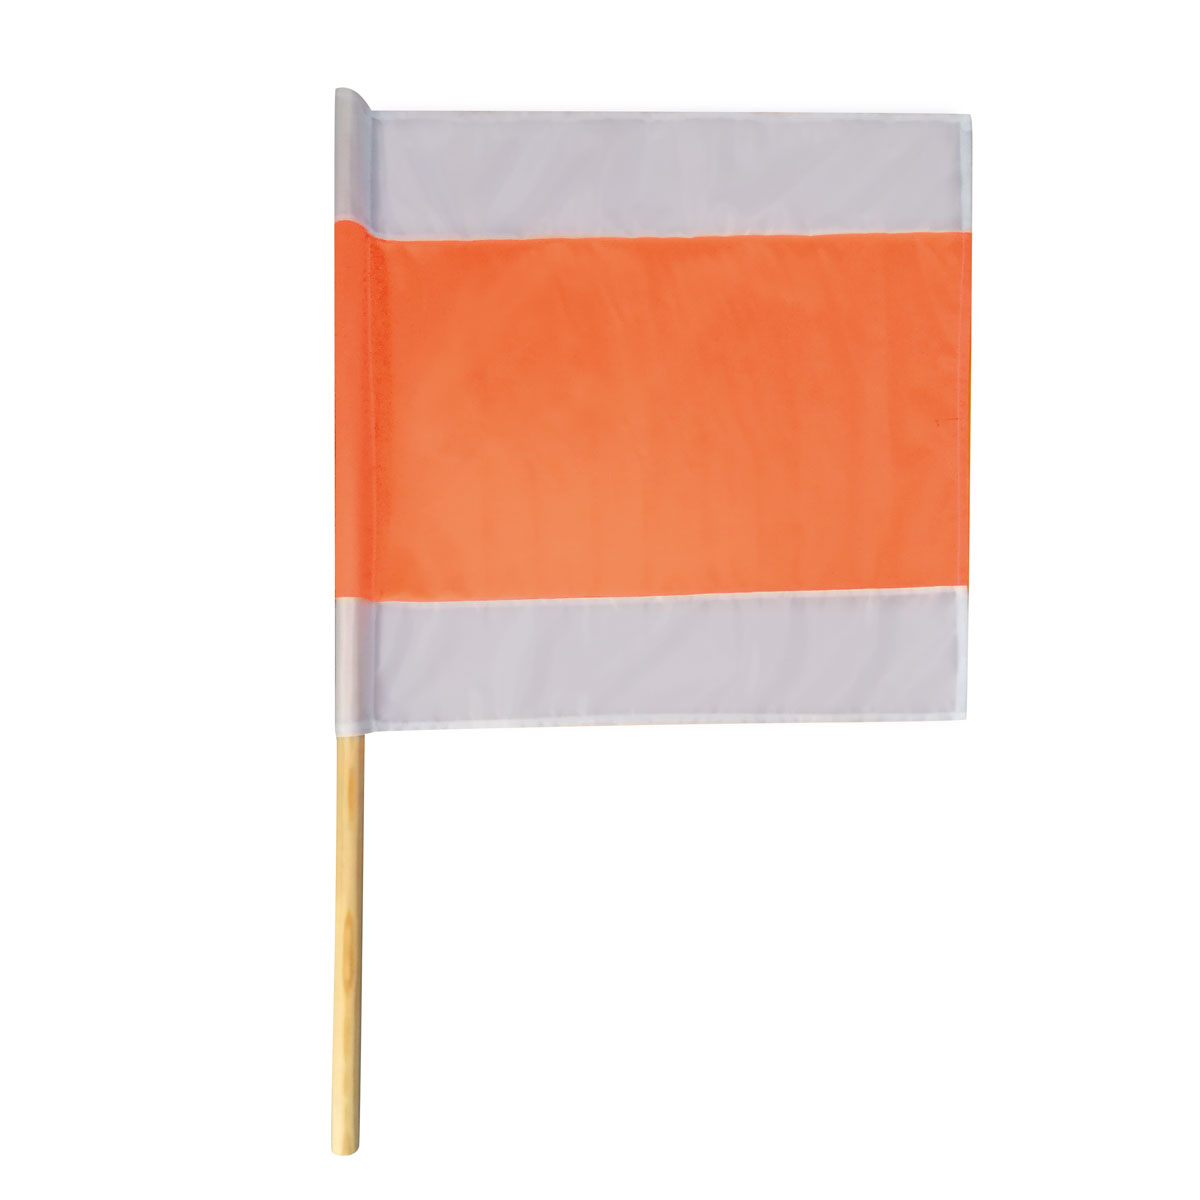 Warnflagge a.Tuch750x750 mm m.Schlaufe weiß/orange/weiß, Holzstiel 1,1 m Ø25 mm